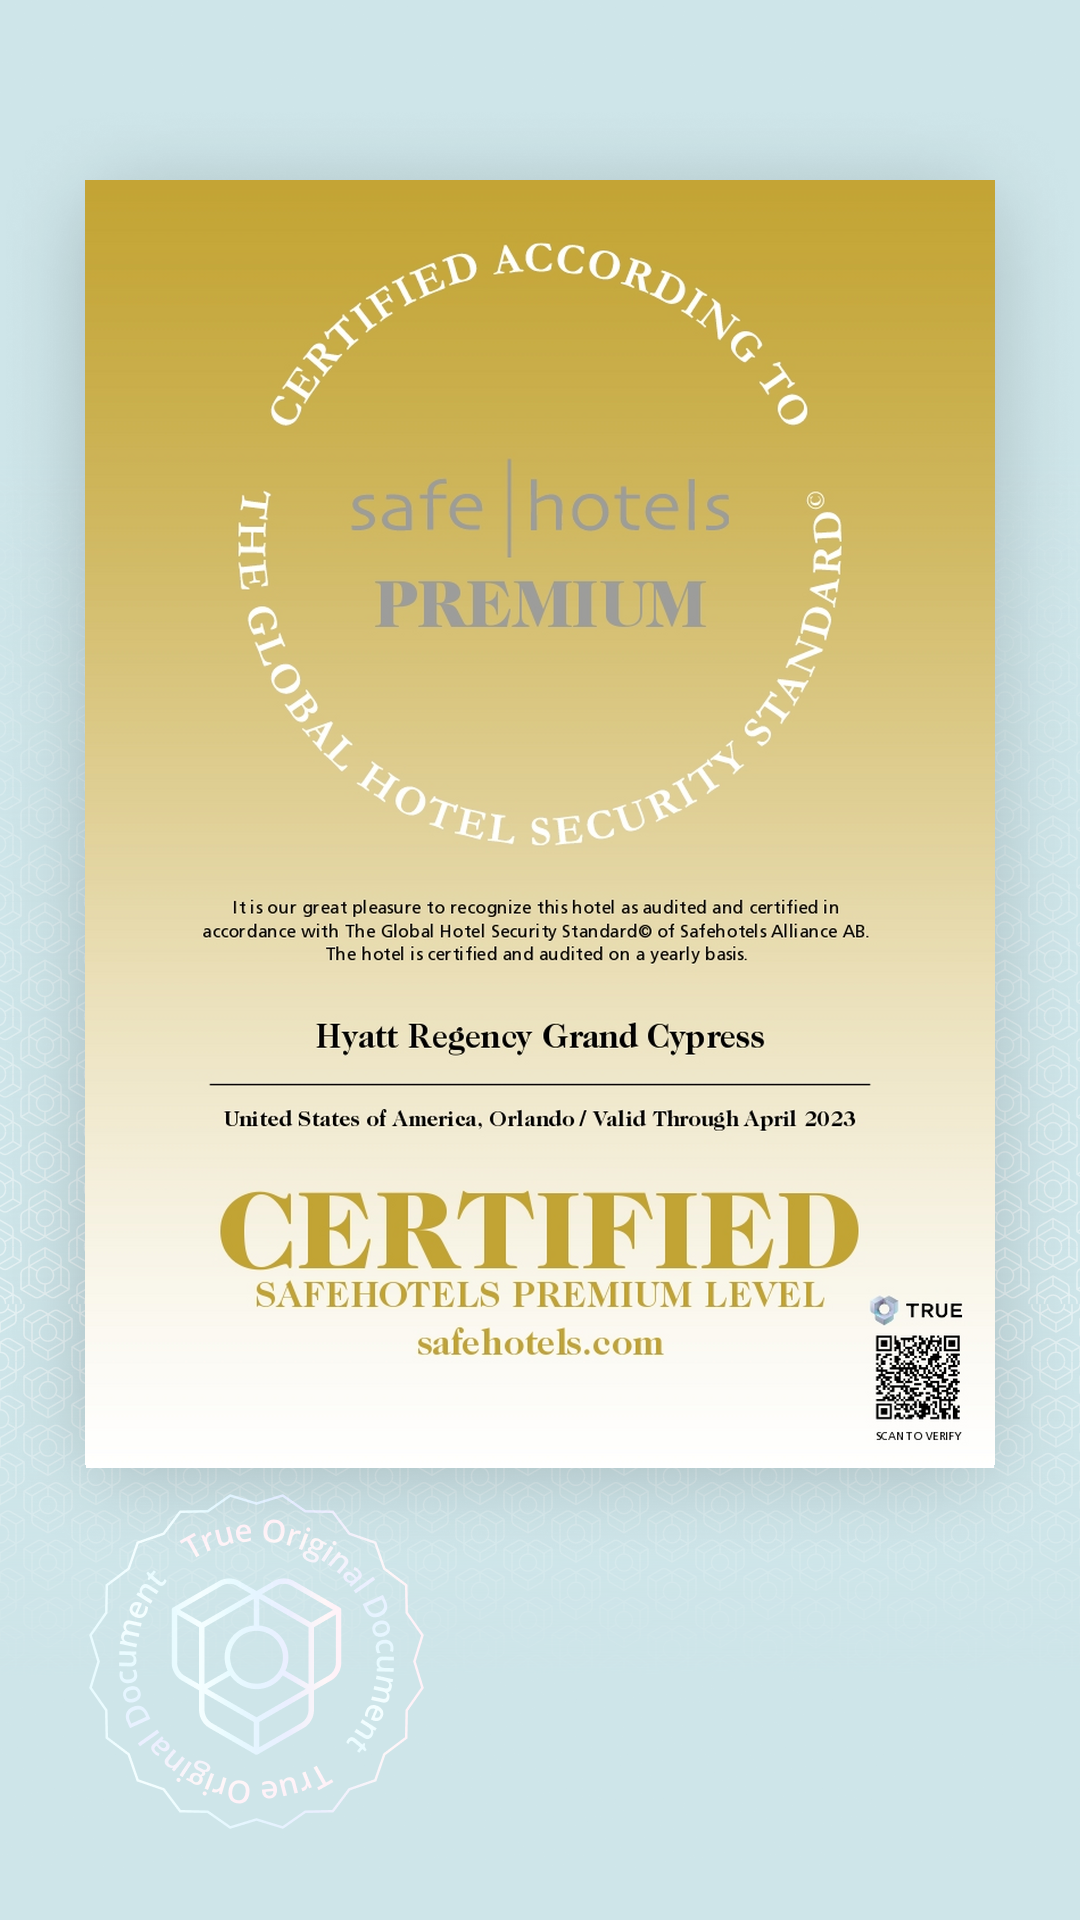 Safehotels Certificate issued to Hyatt Regency Grand Cypress by